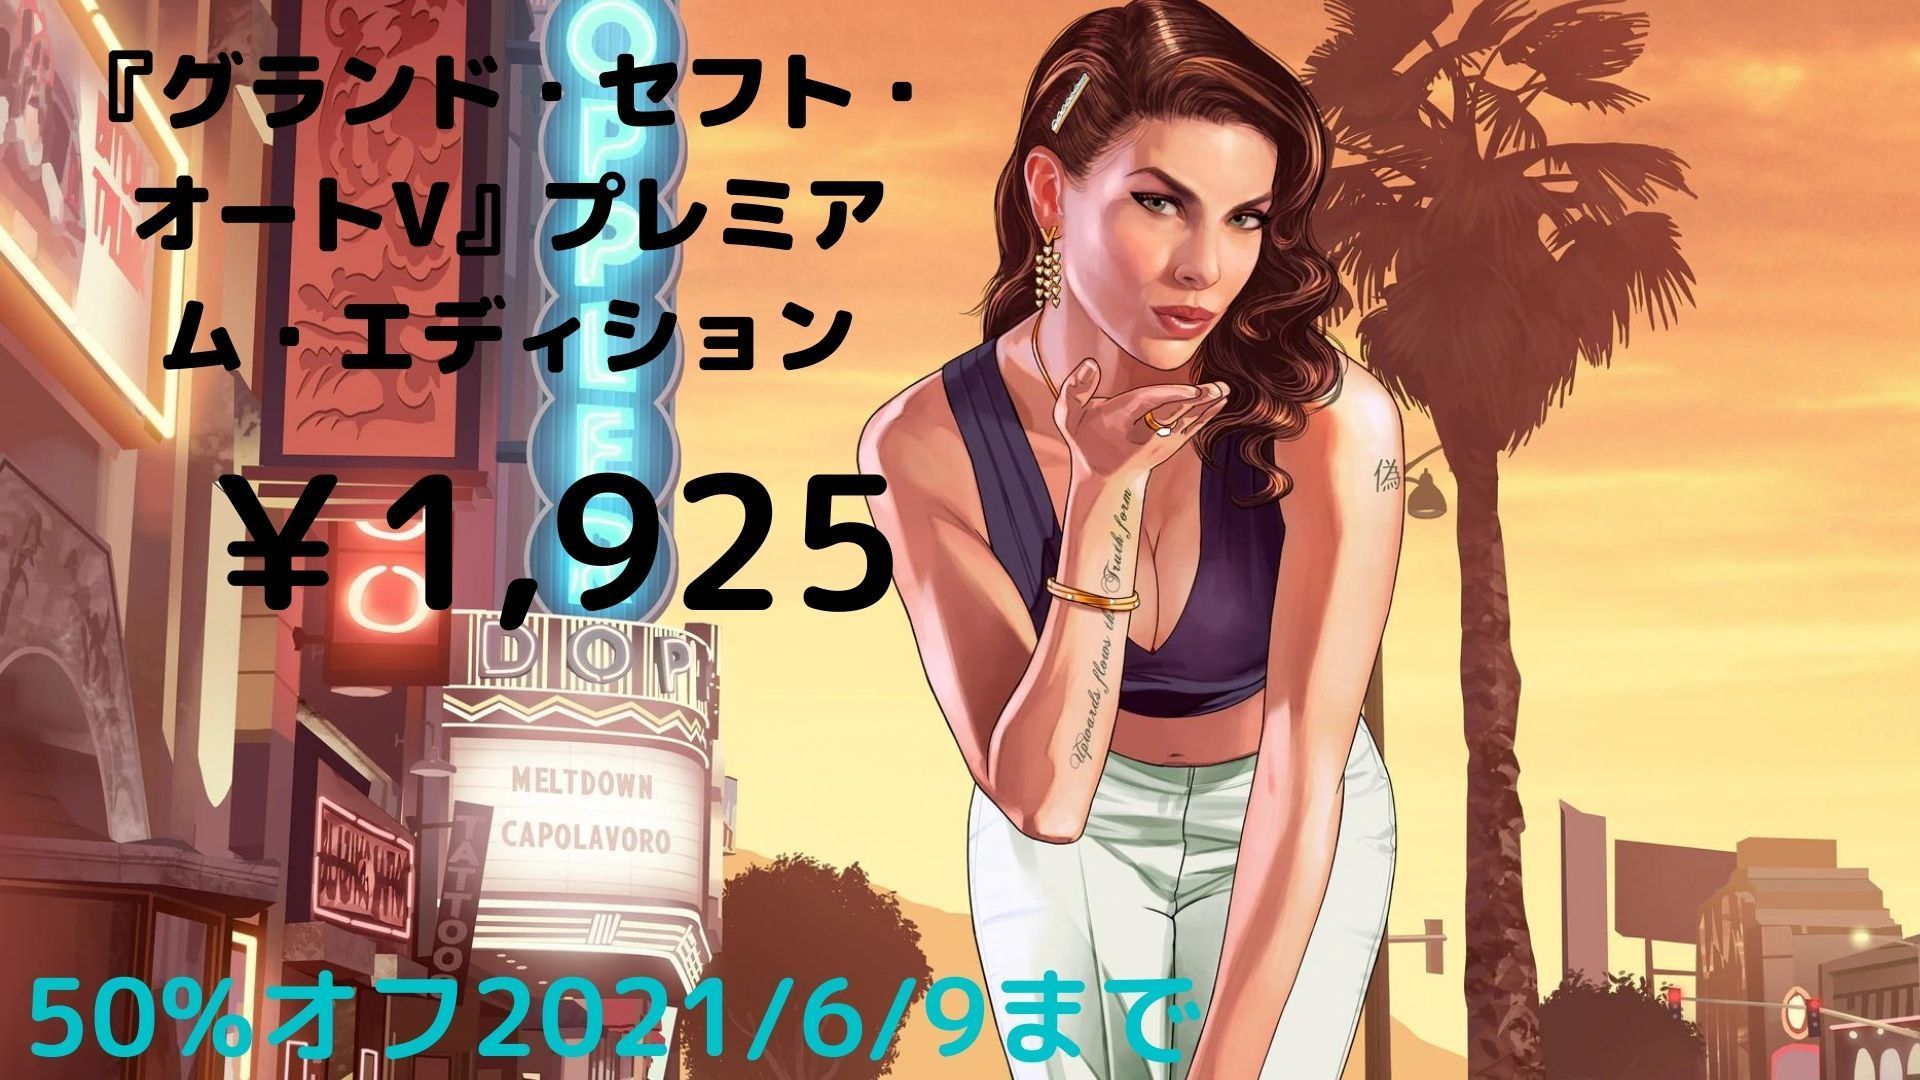 Ps4版 Grand Theft Auto V Gta５ ダウンロード版について ヲタ主婦によるアニゲーブログ